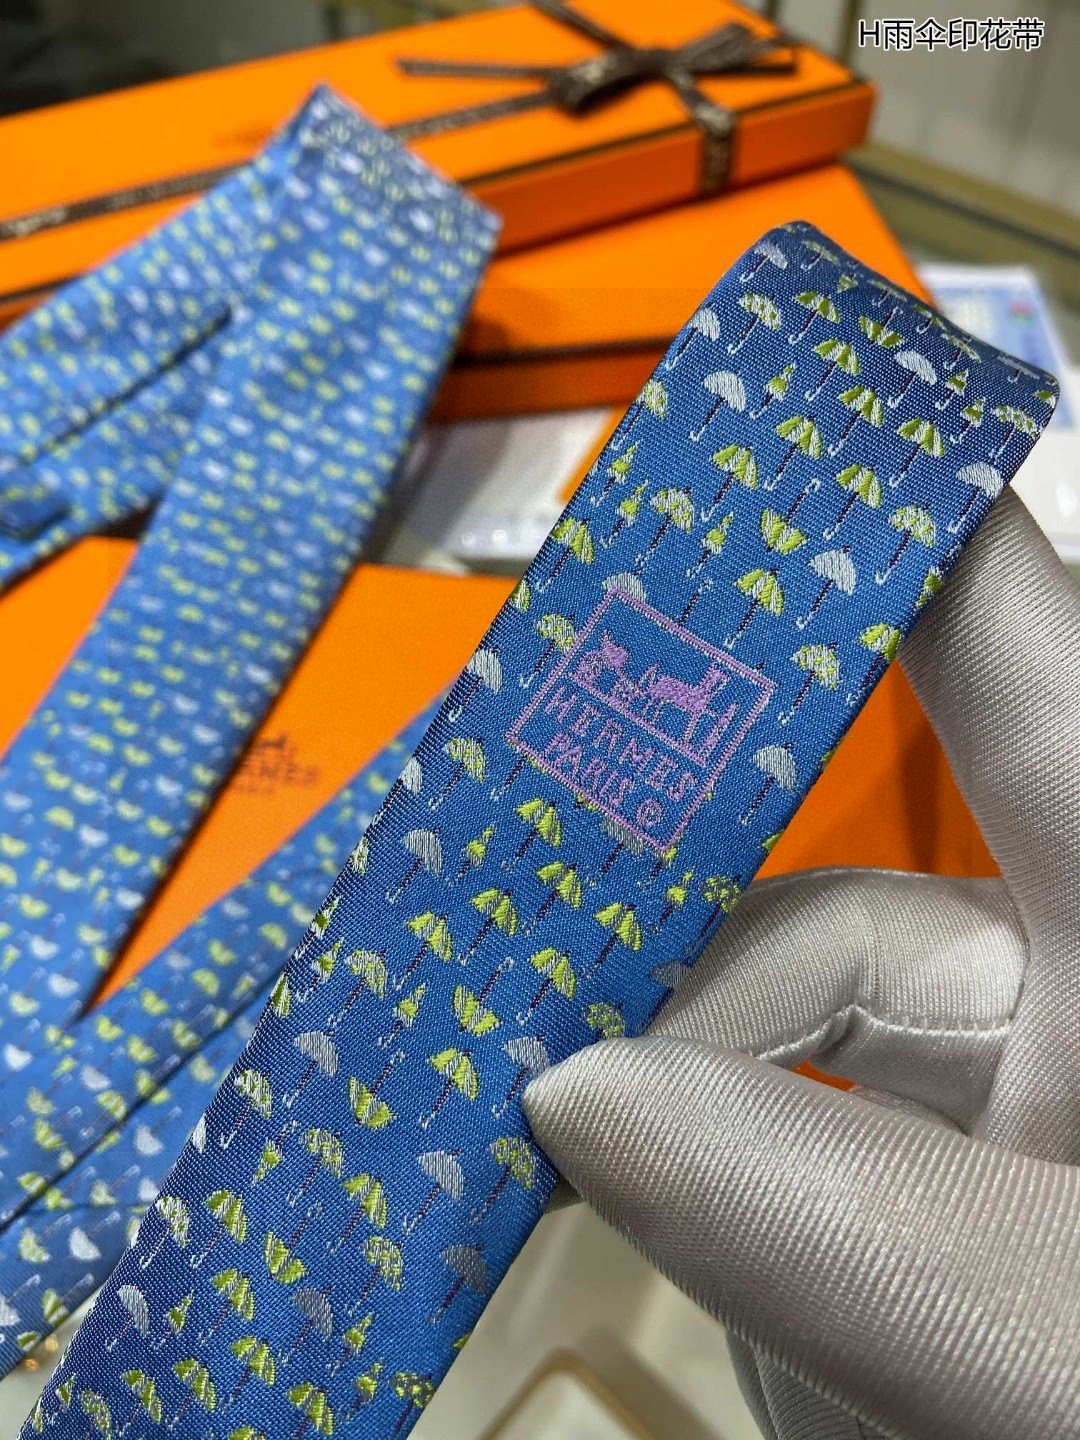 男士新款领带系列H雨伞印花领带稀有H家每年都有一千条不同印花的领带面世从最初的多以几何图案表现骑术活动为